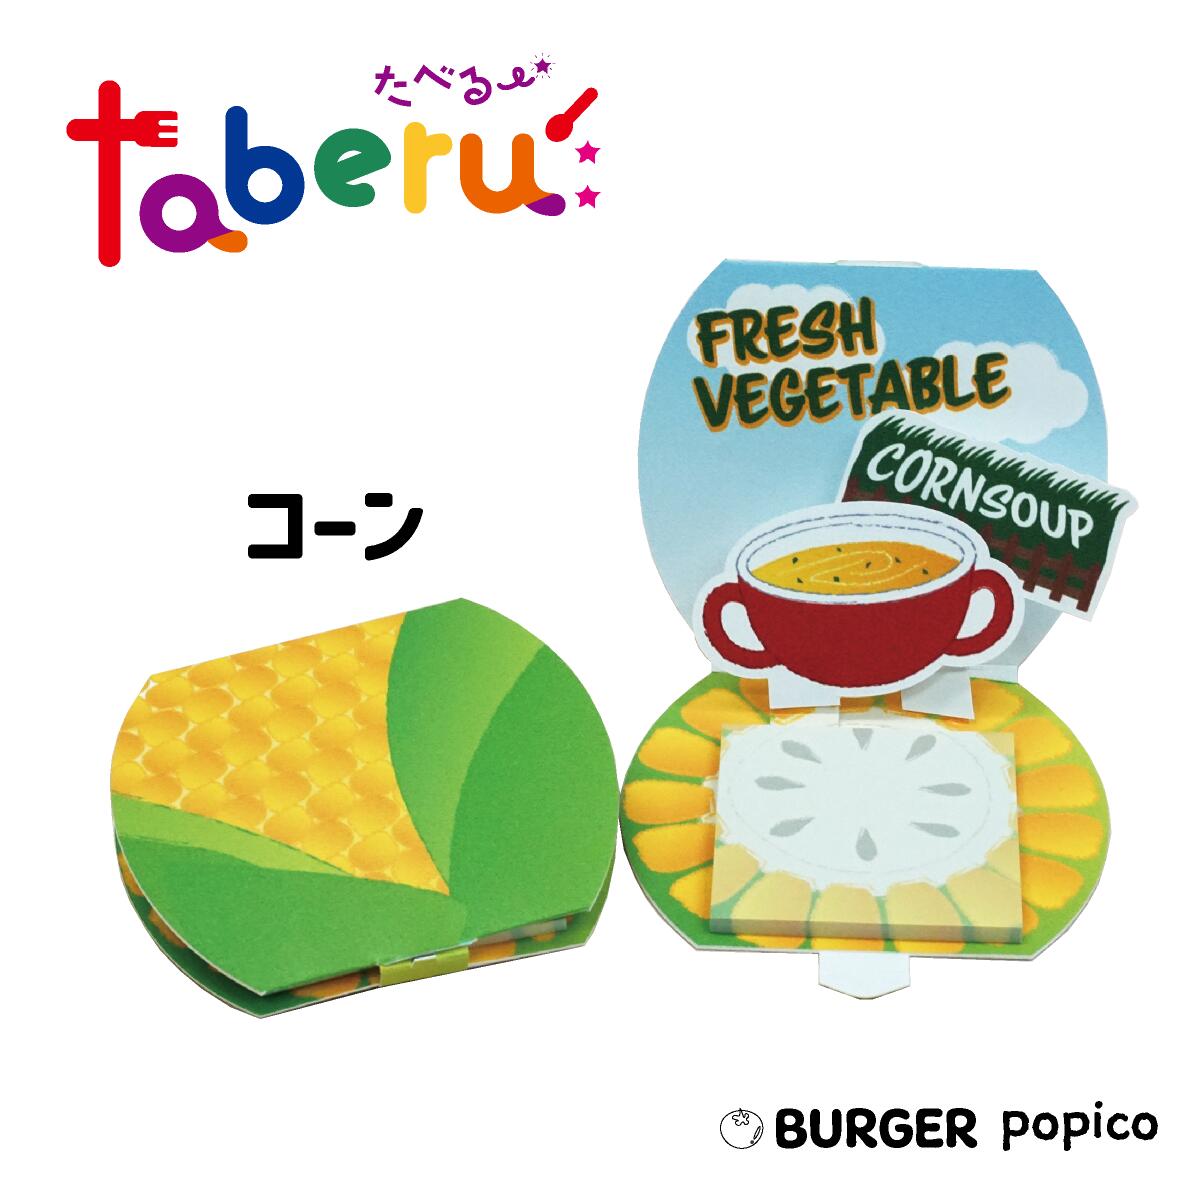 taberu: 【コーン】は、日常にユーモアとカラフルな楽しさを添えるアイテムです。 このポップアップ付箋は、ただの文具ではありません。【バーガー】【トマト】【コーン】【レタス】【ビーフ】【チーズ】の6種類からなる taberu:「BURGER popico」シリーズは、それぞれの付箋がハンバーガーの一部となり、集めて組み合わせることで、あなたのデスクの上にハンバーガーを完成させることができます！ ポップなカラーと食べ物のデザインが、日々のメモを取る瞬間にも楽しさをプラス。 友人へのギフトや、自分へのご褒美にもぴったりです。 仕事や勉強の合間の小休憩に、ちょっとした遊び心を取り入れてみませんか？ taberu:「BURGER popico」で、あなたの日常に彩りと笑顔を。 ■商品詳細 ・商品サイズ　約80mmx70mmx厚さ4mm（閉じた状態） ・材質：紙 ・付箋サイズ：50mmx50mm ・付箋枚数：30枚※モニターの発色具合によって実際の商品と色が異なる場合があります。※手加工の為、商品ごとに若干の個体差が生じる場合がありますのでご了承ください。